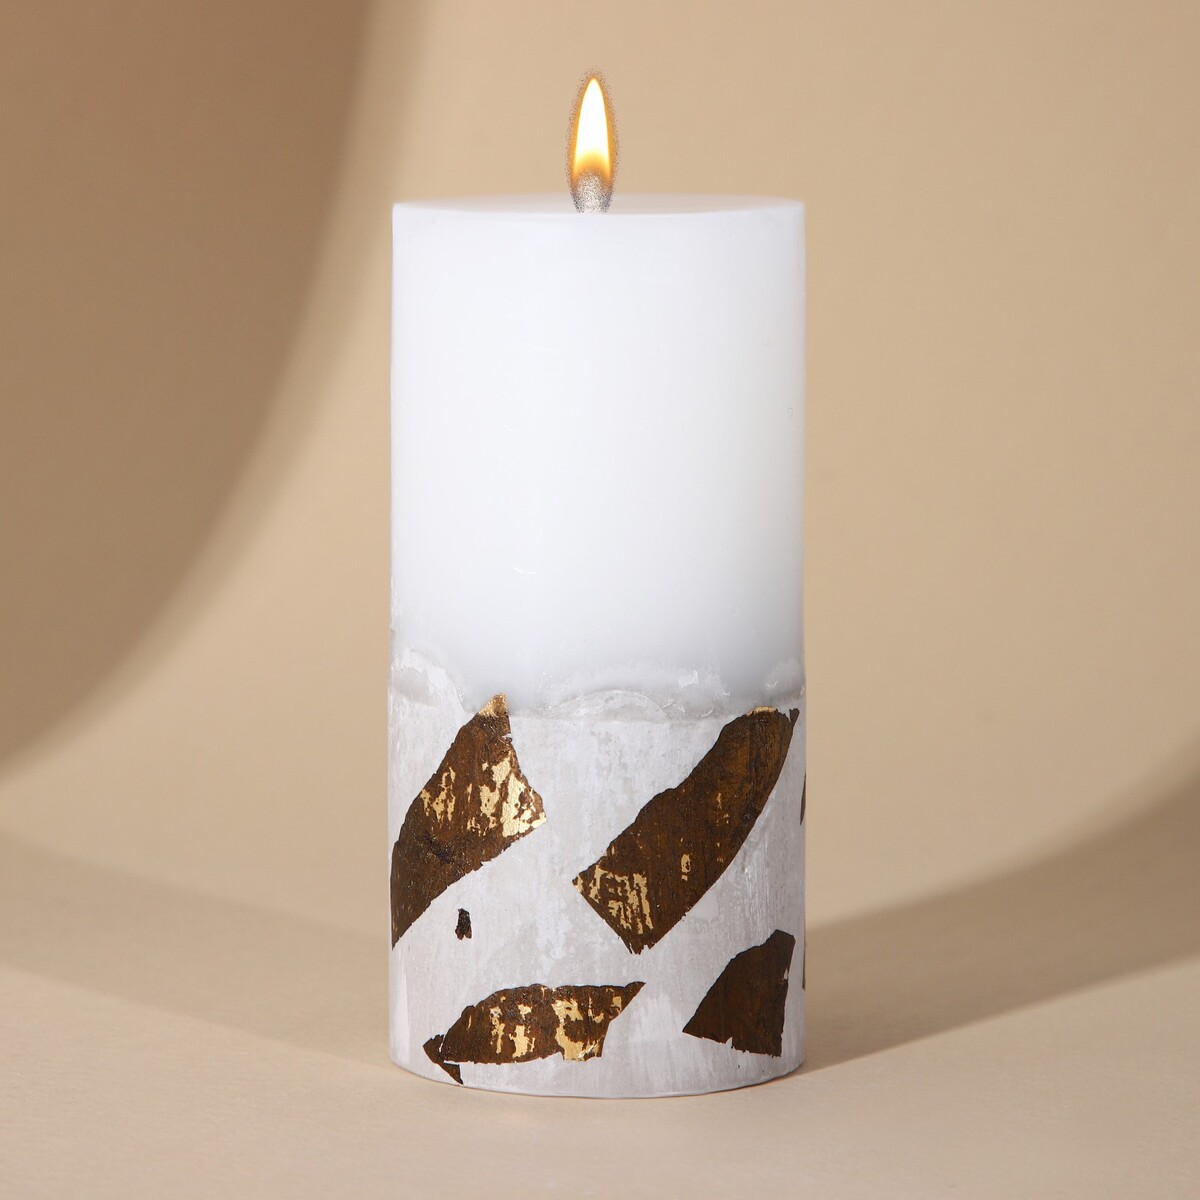 Свеча столбик с бетоном (поталь), цвет белый, 10 х 5 см свеча столбик екатеринбург белая 4 5 х 9 см